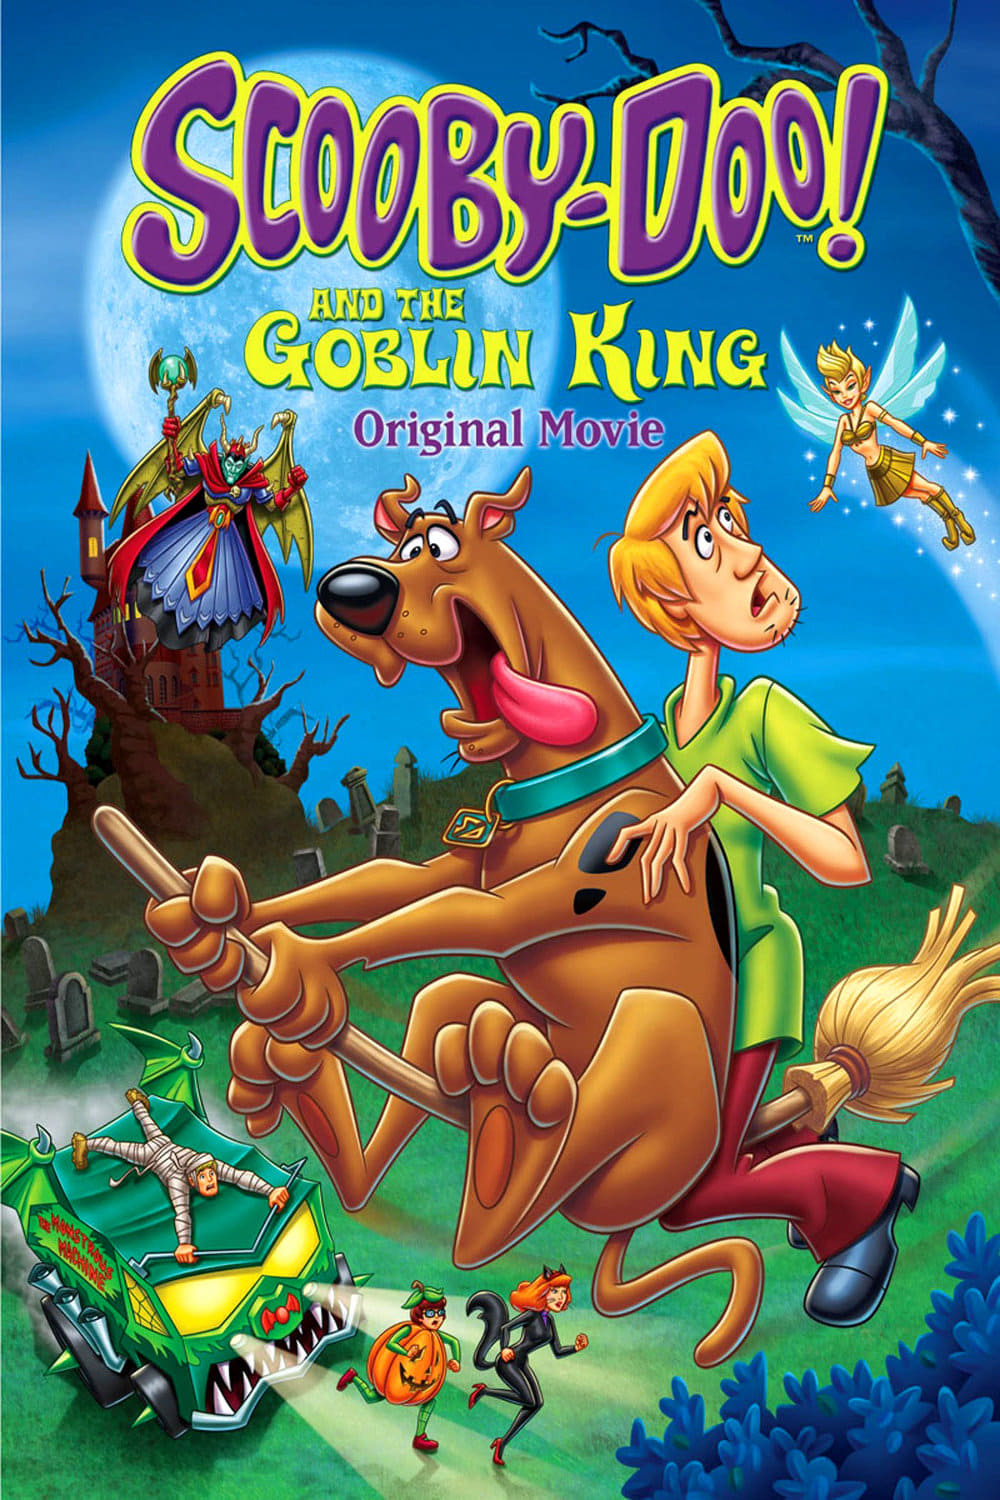 Scooby-Doo! e o Rei dos Duendes